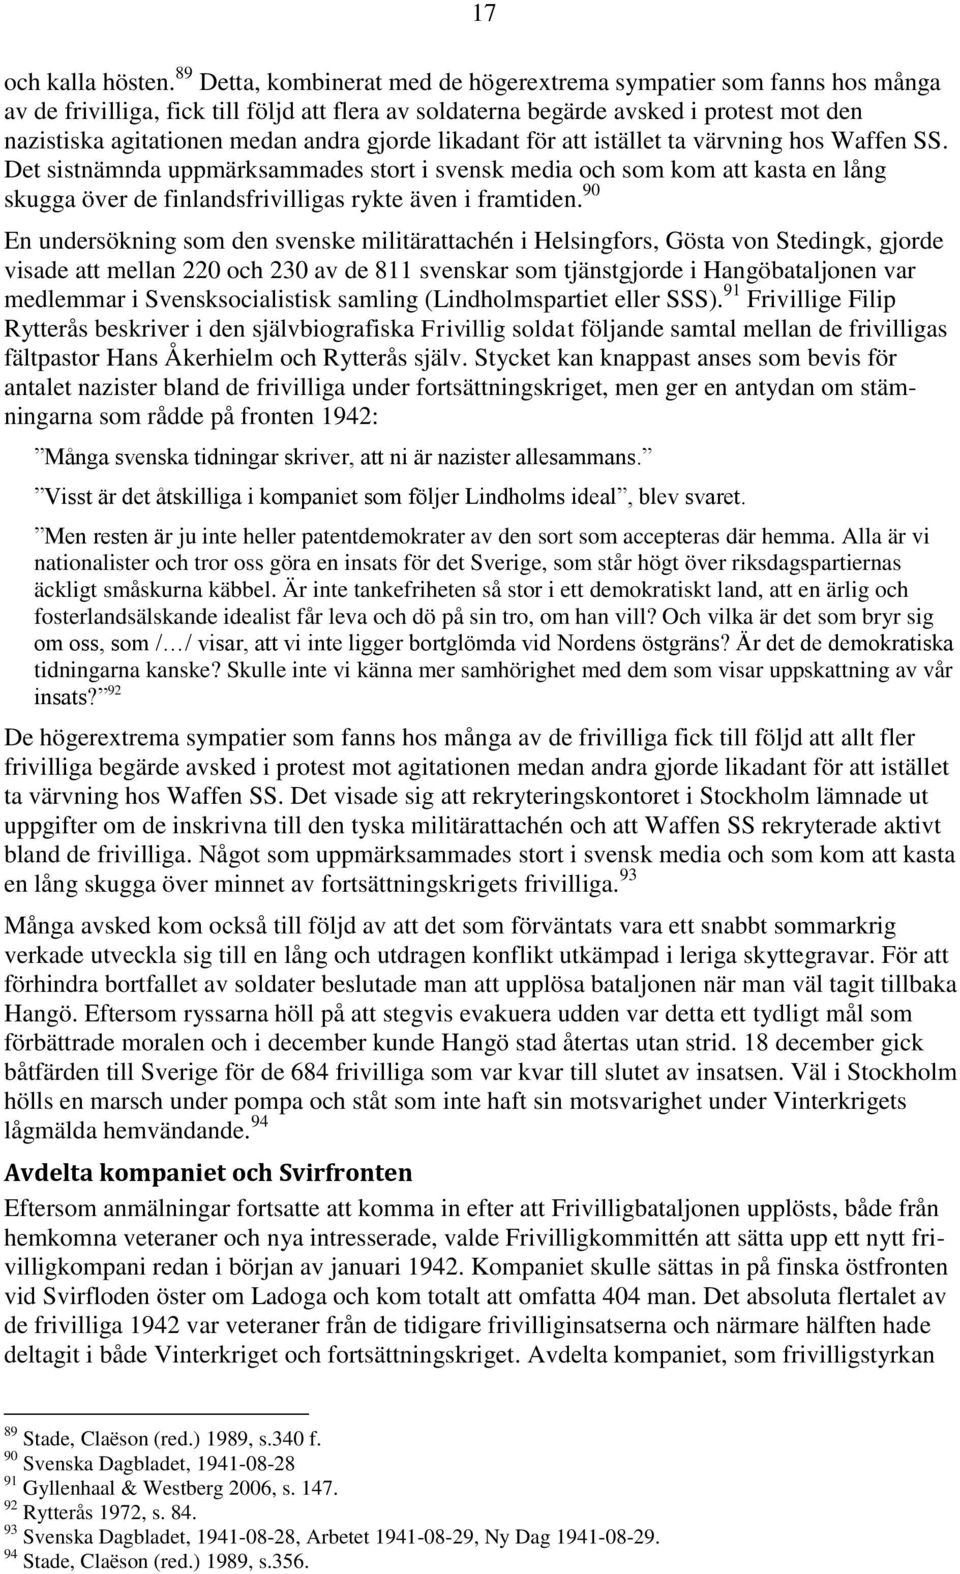 gjorde likadant för att istället ta värvning hos Waffen SS. Det sistnämnda uppmärksammades stort i svensk media och som kom att kasta en lång skugga över de finlandsfrivilligas rykte även i framtiden.